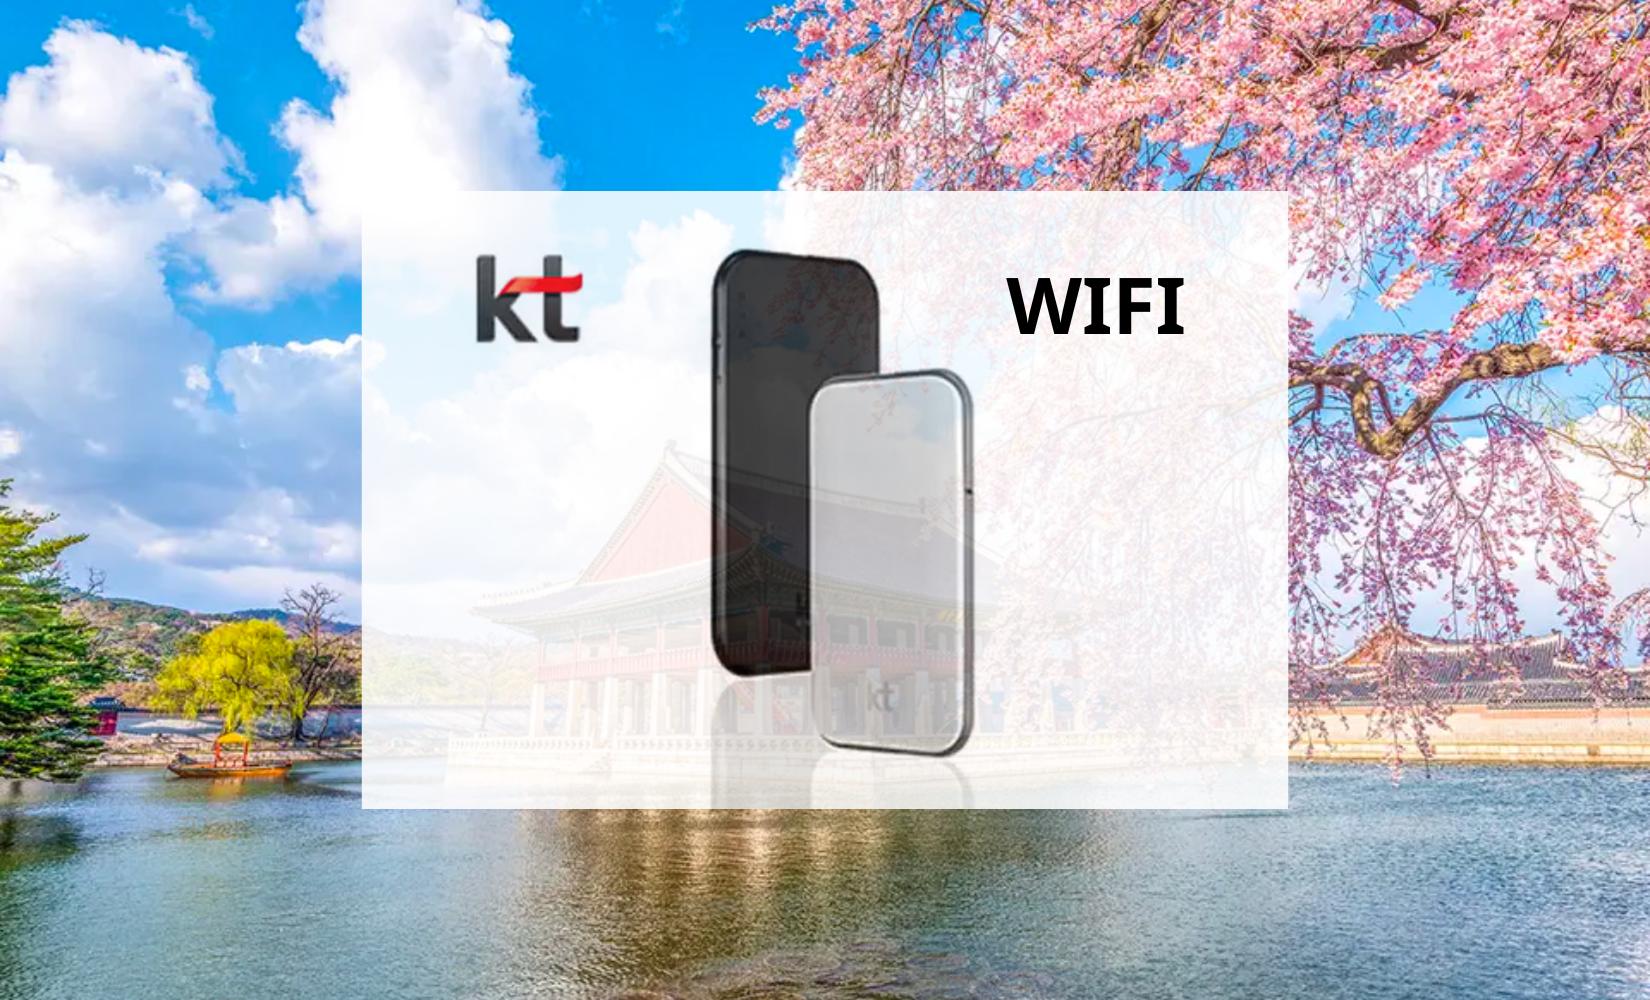 KT WIFI: Thuê cục phát wifi giá rẻ, tốc độ nhanh tại Hàn Quốc